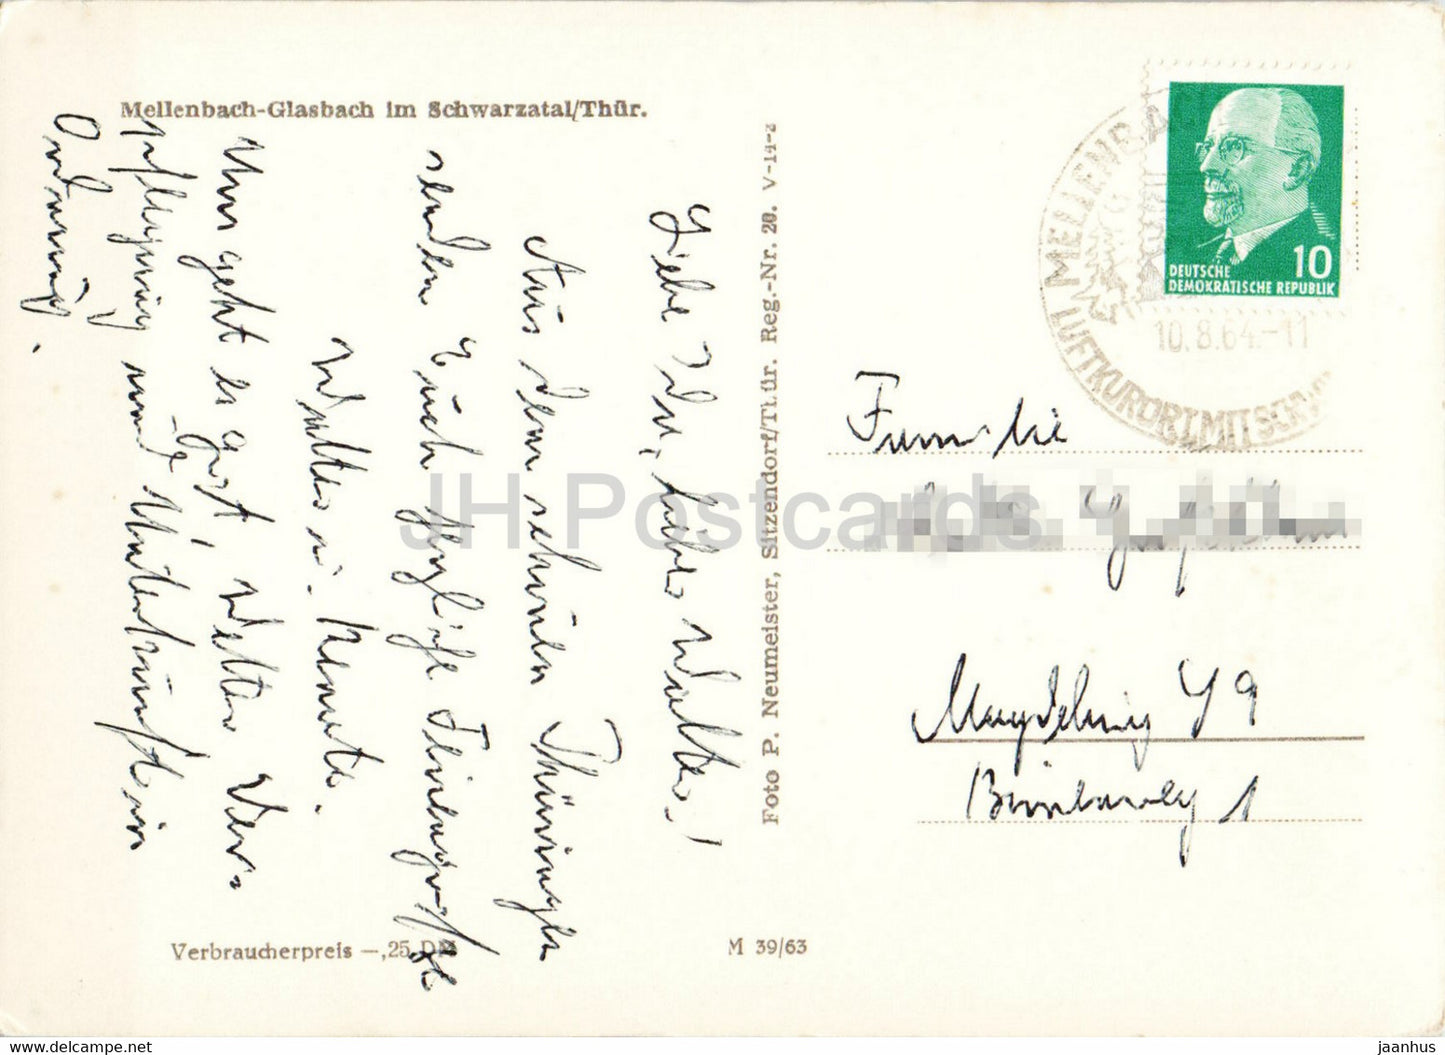 Mellenbach Glasbach im Schwarzatal - old postcard - 1964 - Germany DDR - used